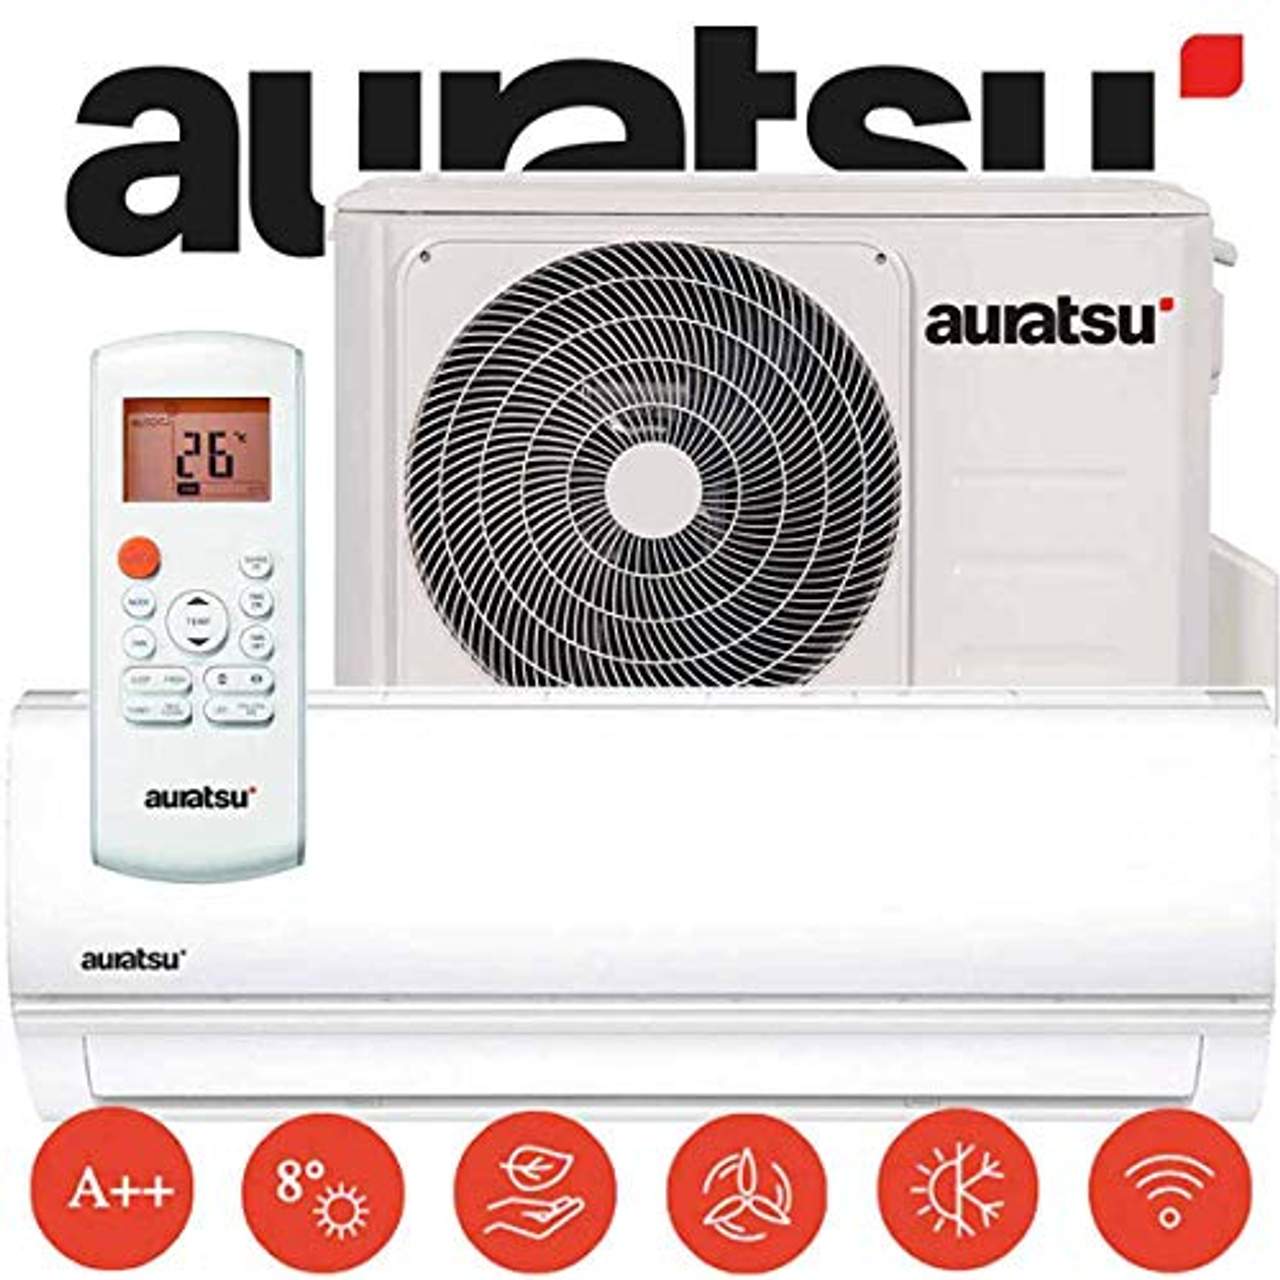 Auratsu AWX-12KTA Split Klimaanlage 3,5 kW 12000 BTU